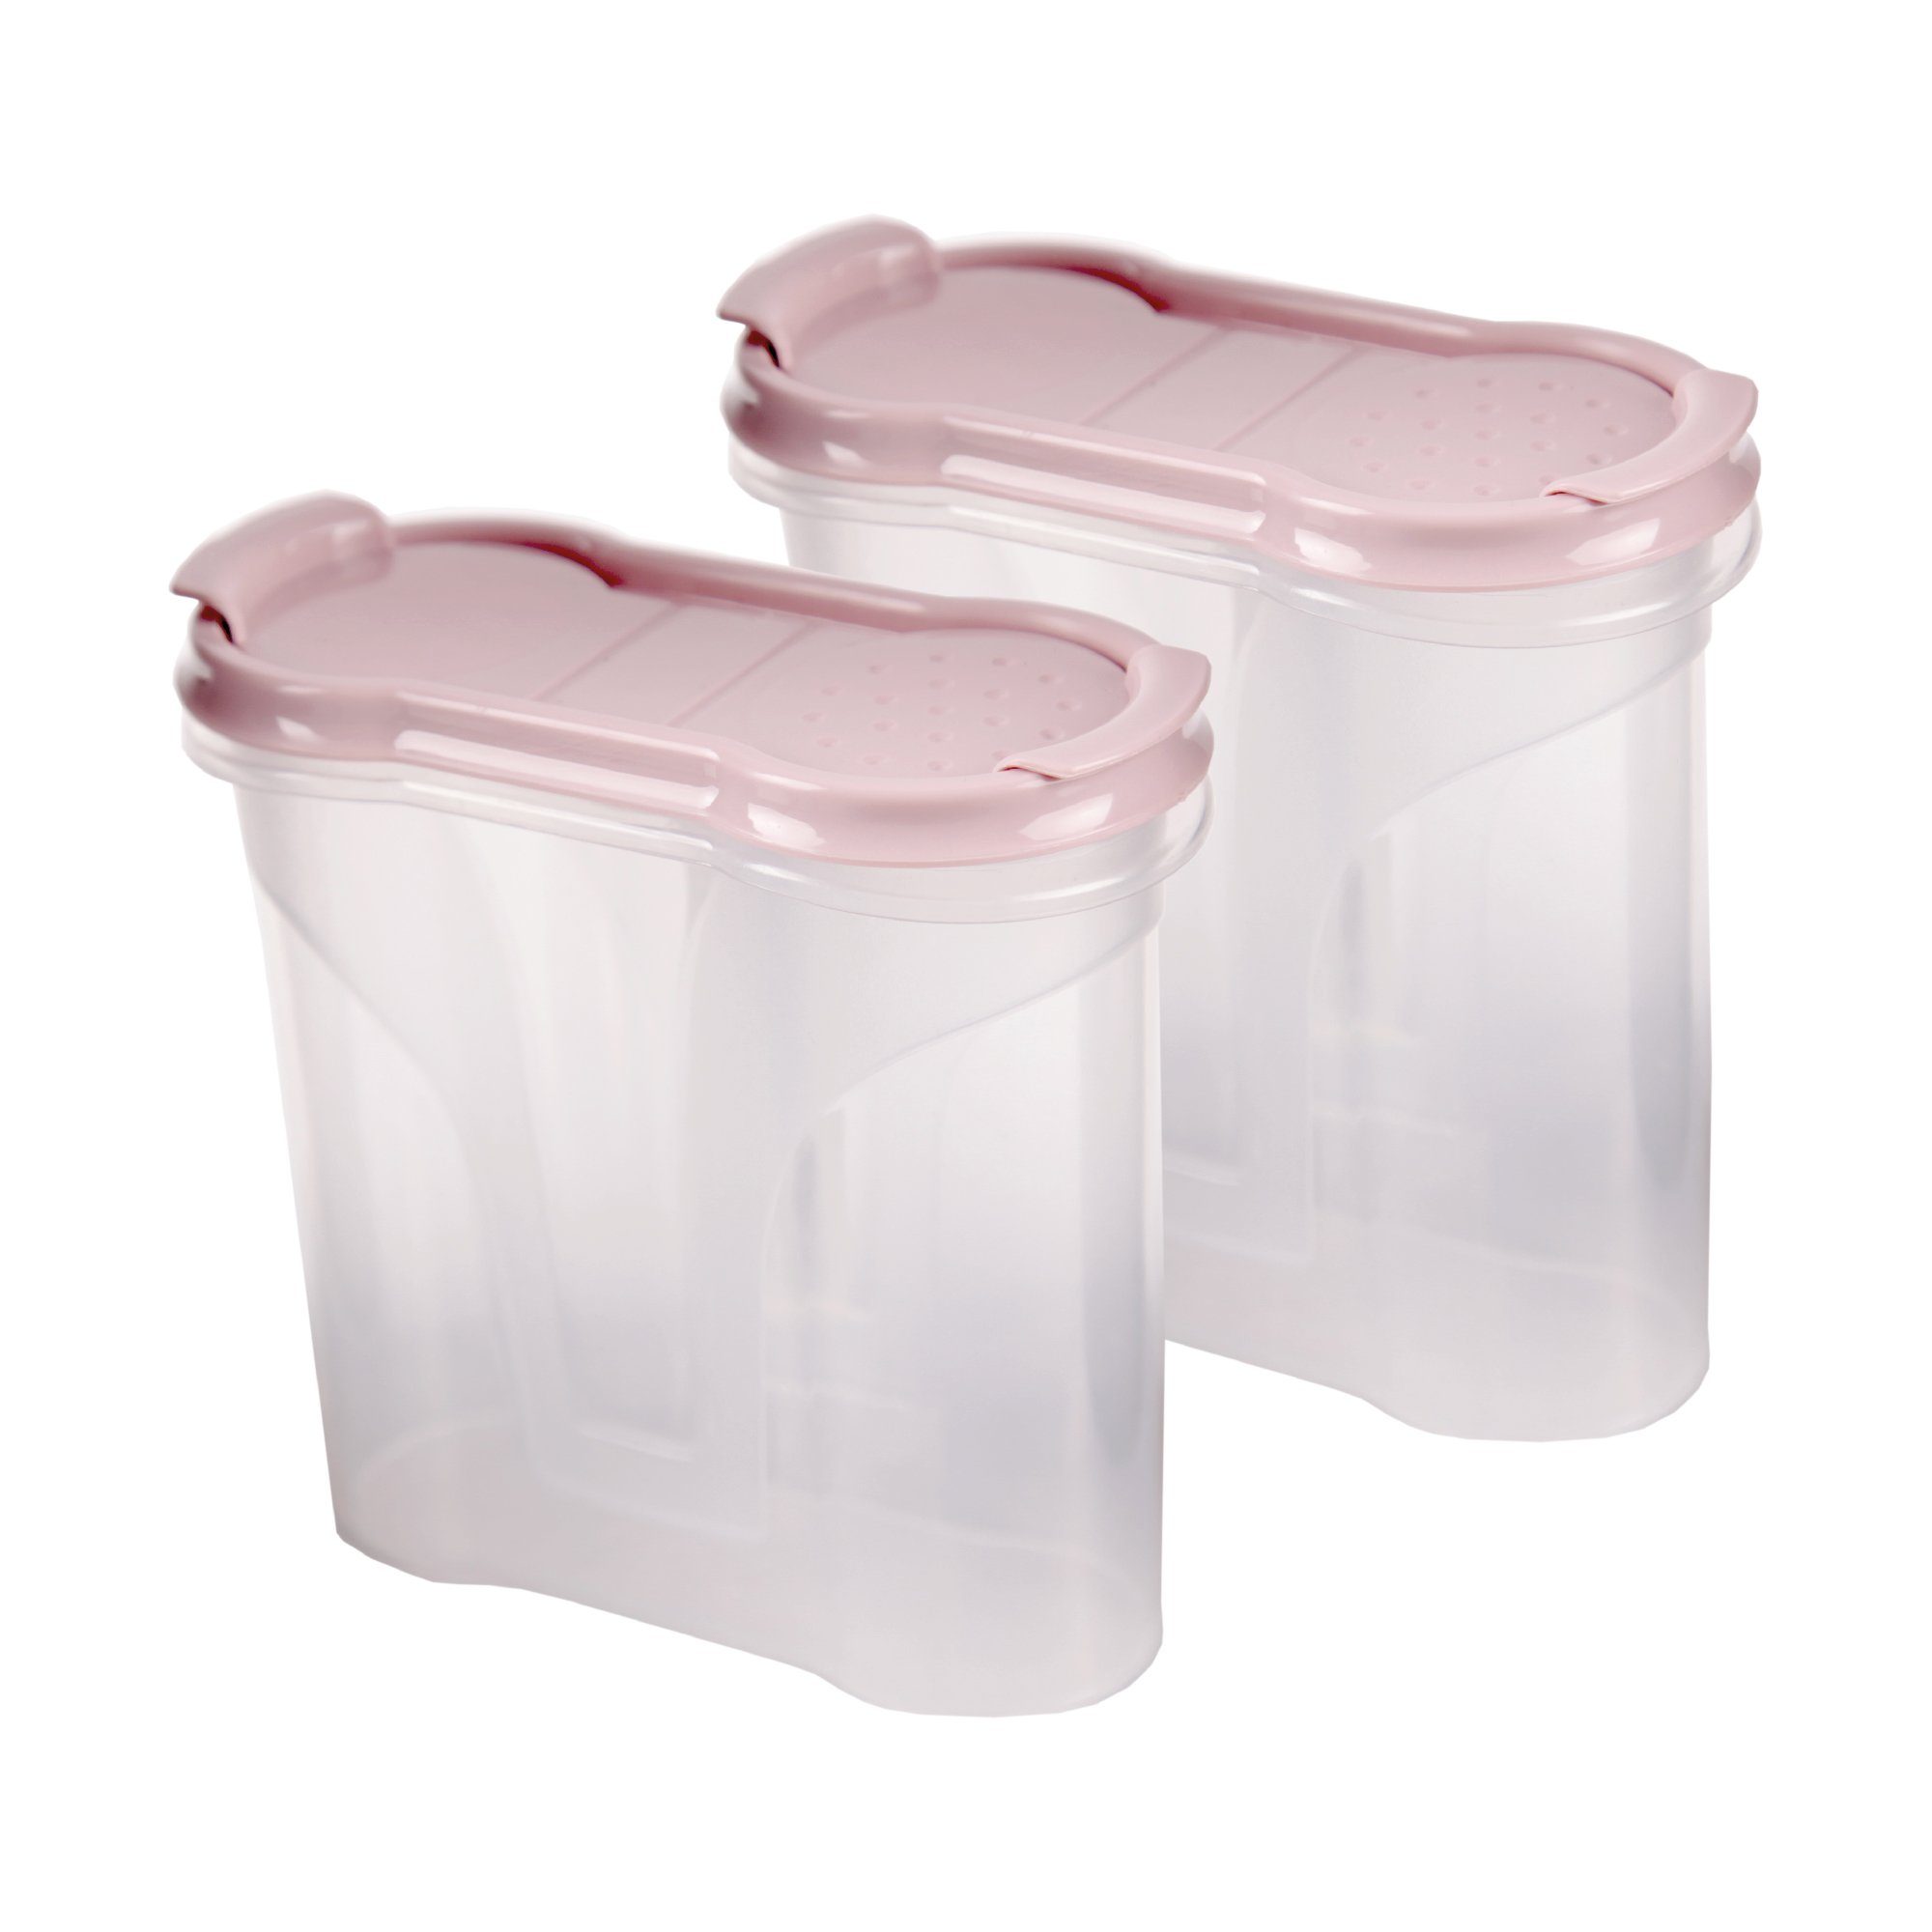 Bestlivings Gewürzbehälter Vorratsdose 300ml, Kunststoff, (2-tlg., 300 ml), Schüttdose für Gewürze, Vorratsbehälter Set – Frischhaltedosen